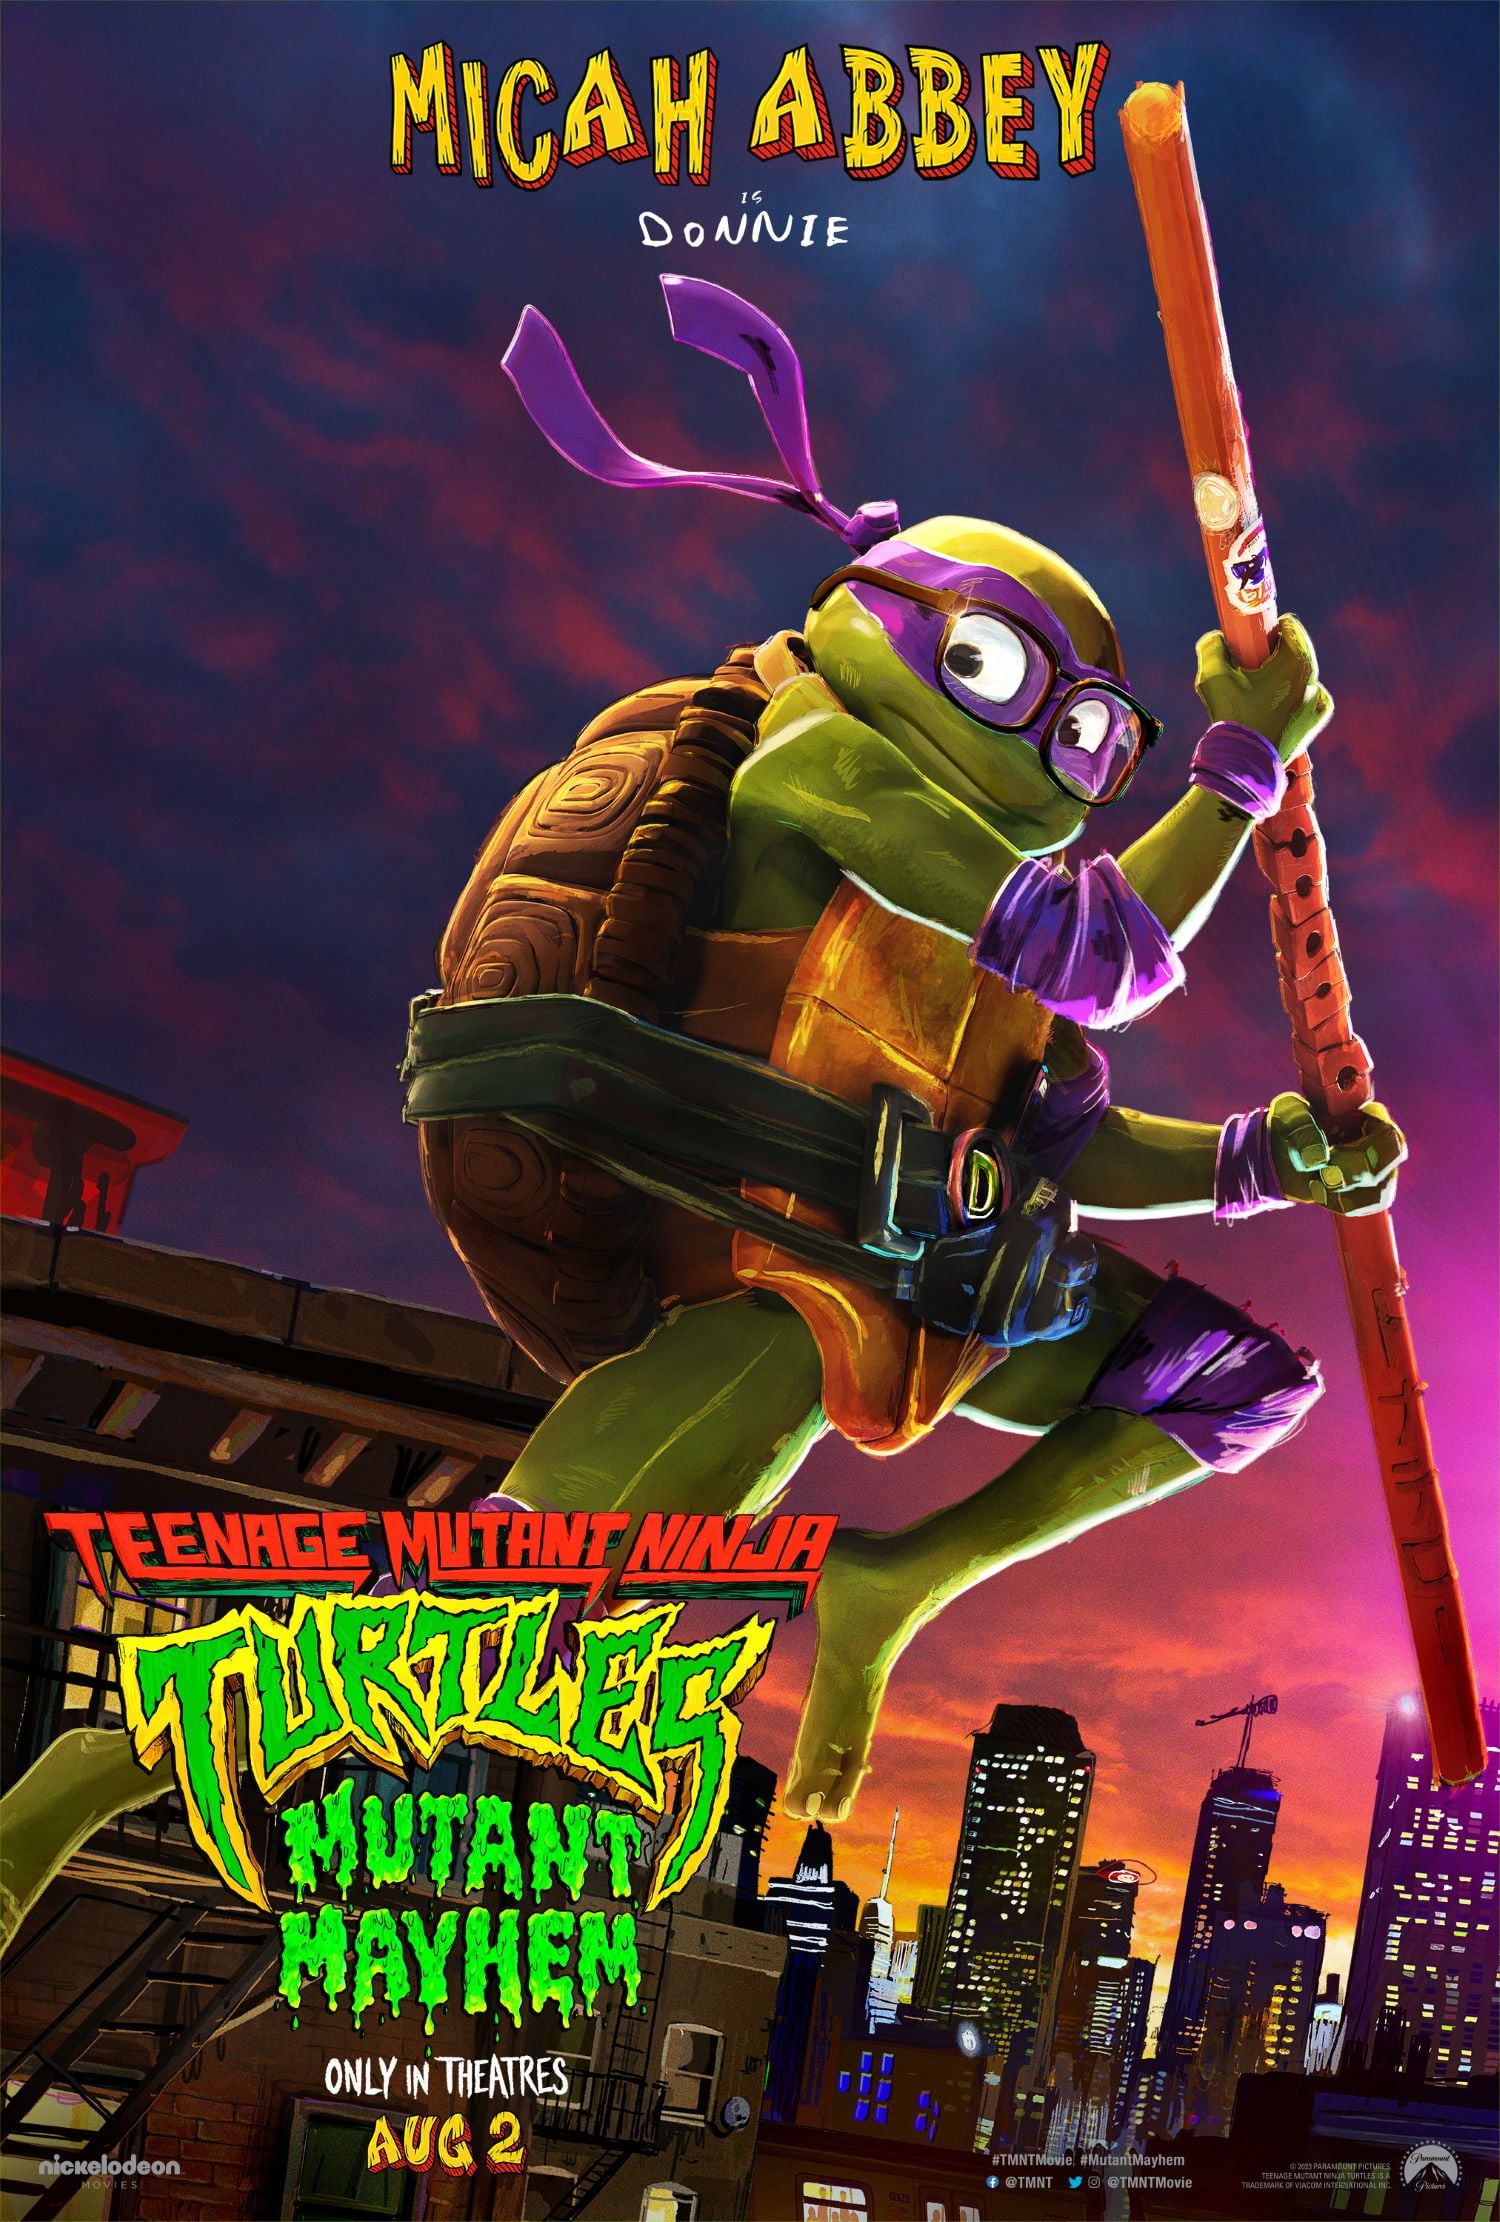 Teenage Mutant Ninja Turtles (4k/uhd) : Target